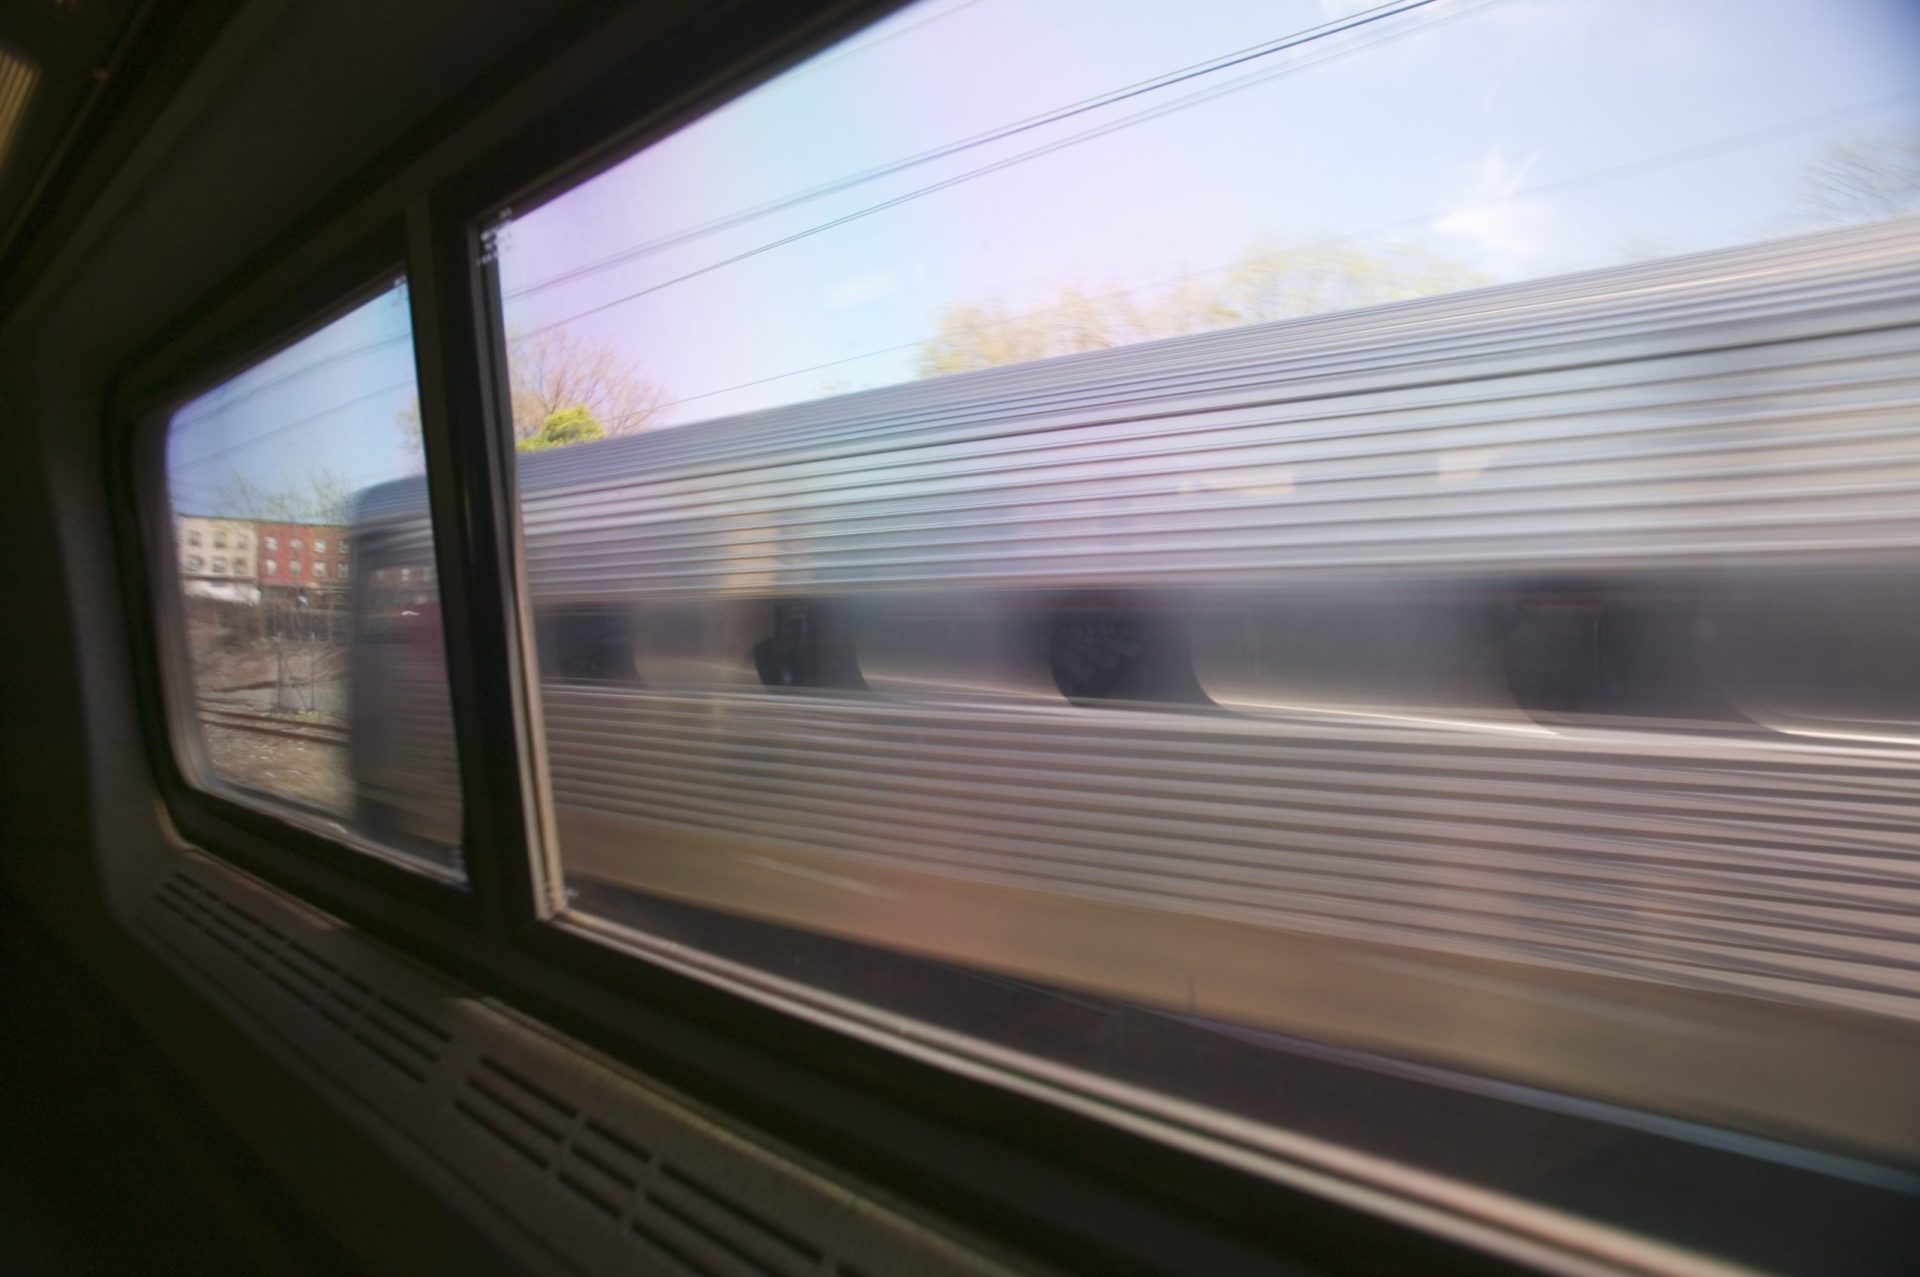 Mulher foi violada em comboio enquanto outros passageiros assistiram sem fazer nada: “Quem permite que algo assim aconteça?”